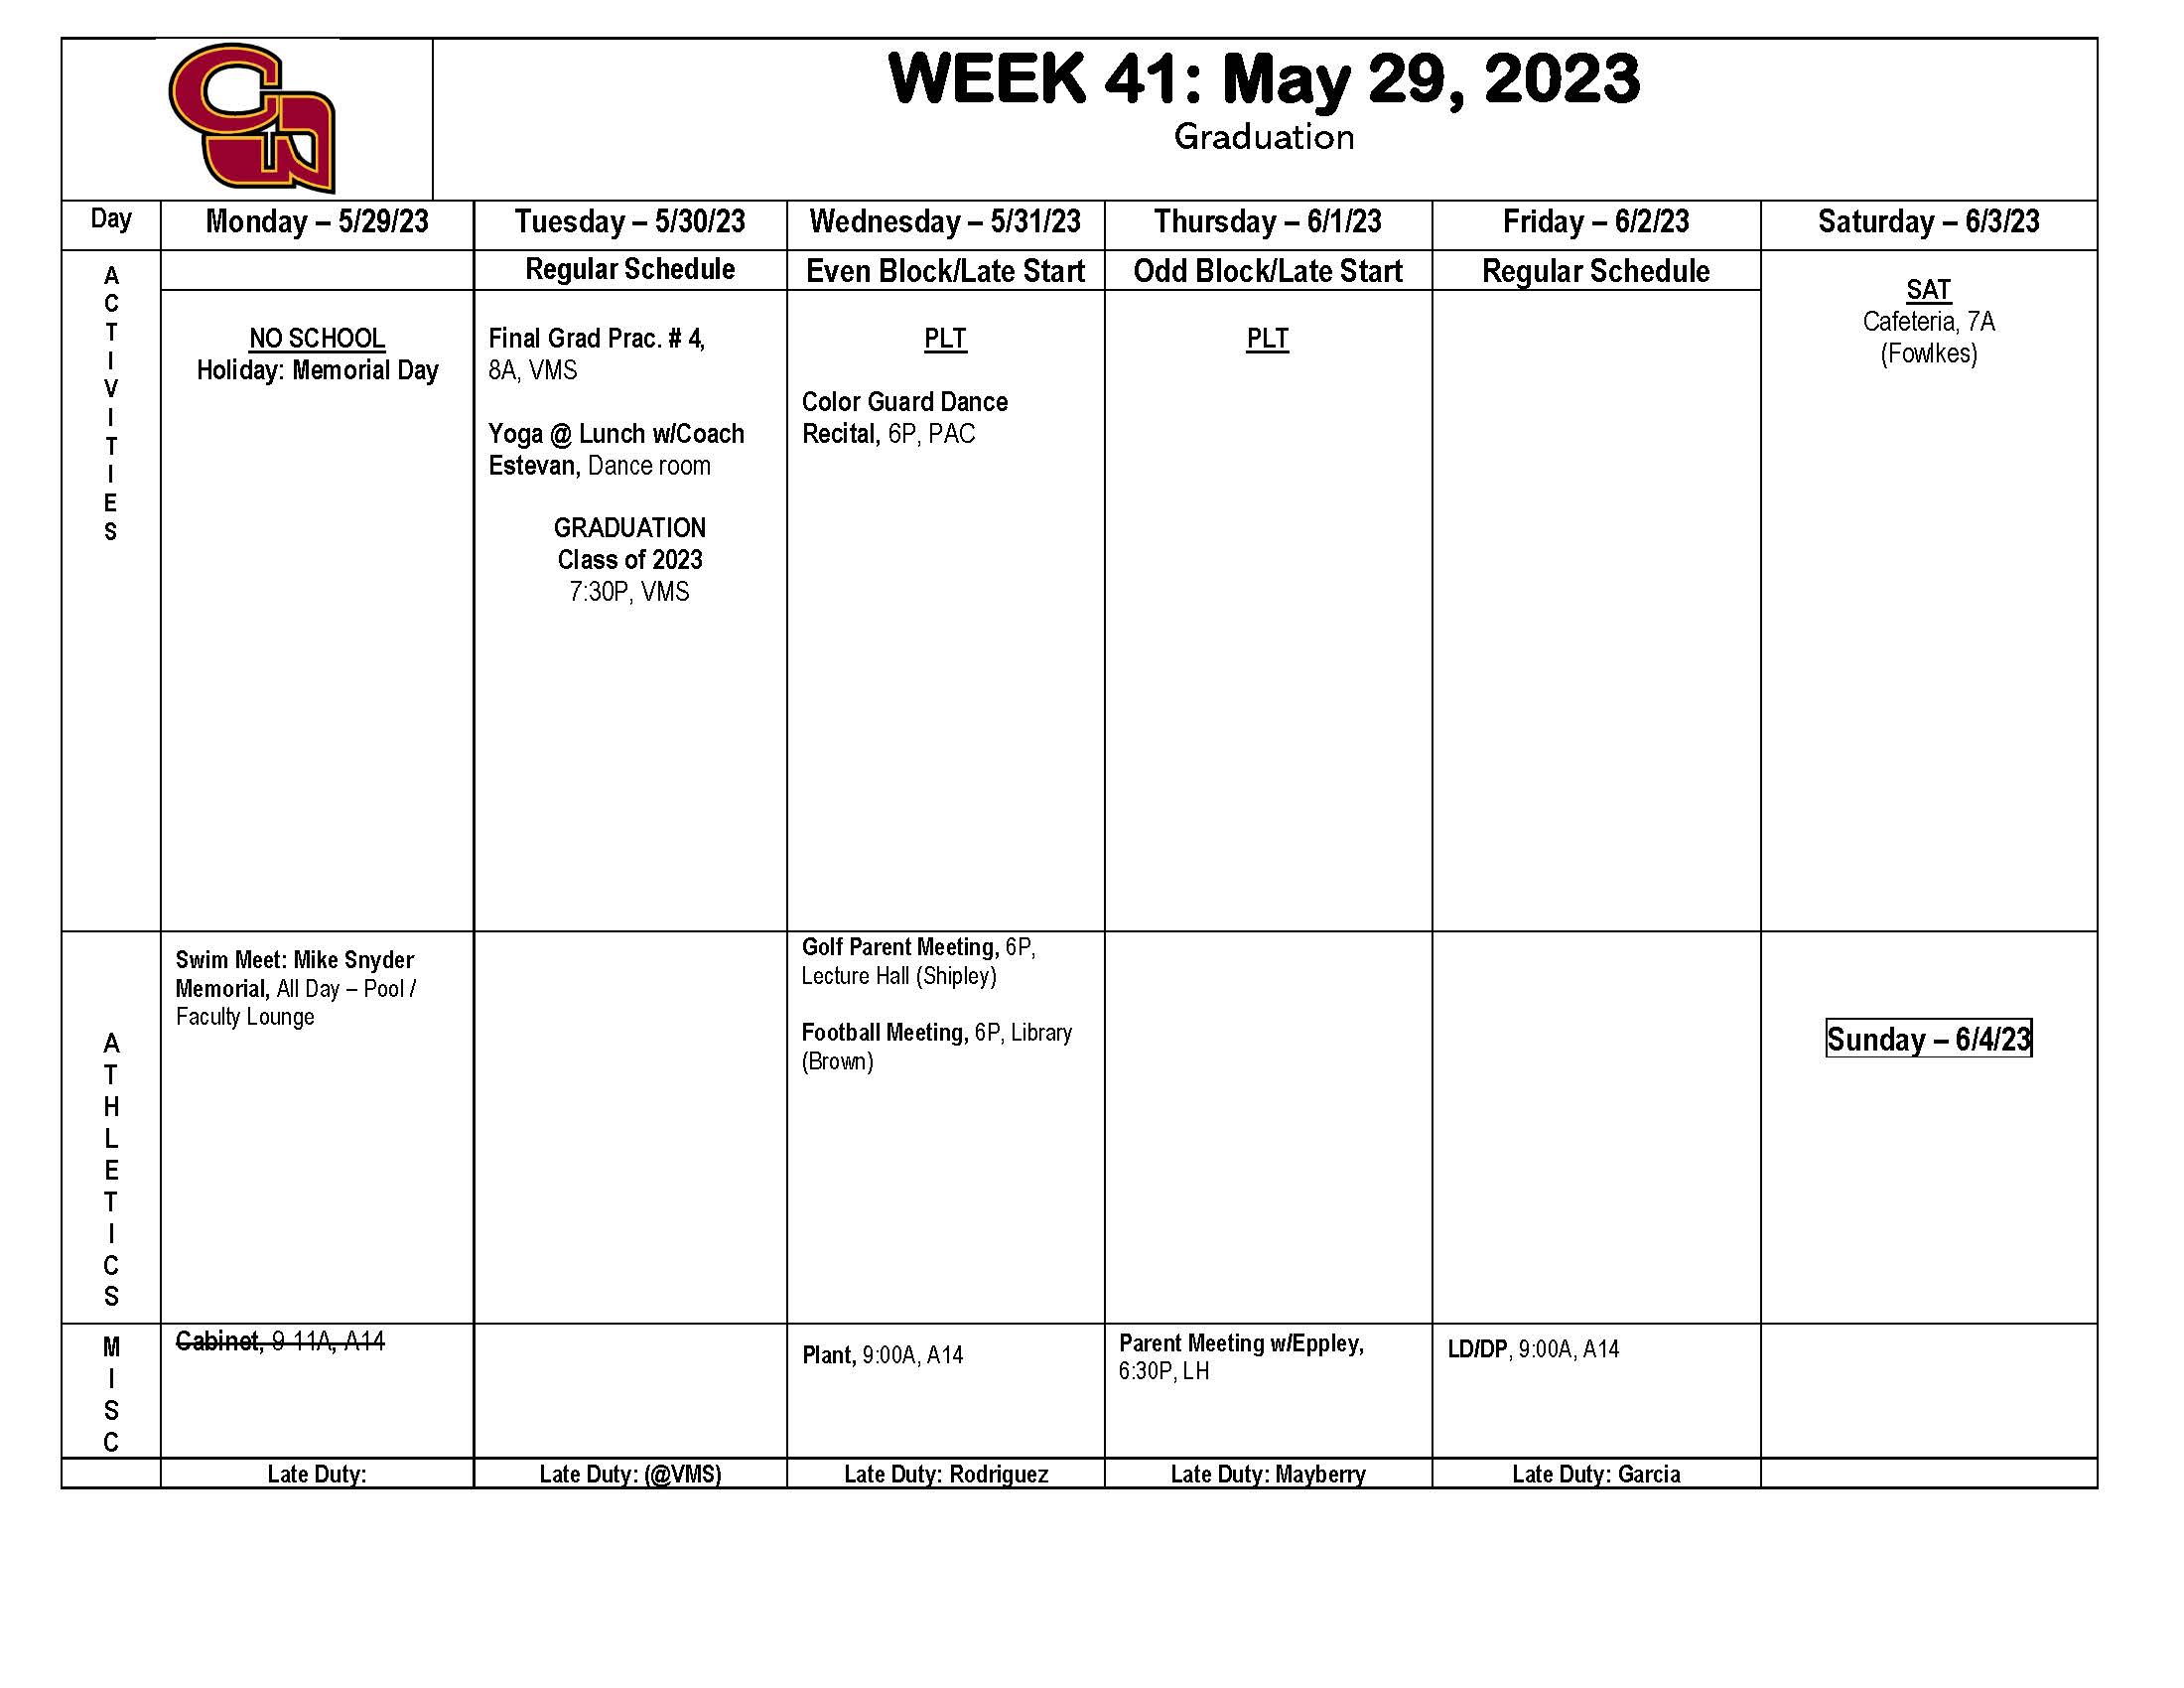 Week of May 29